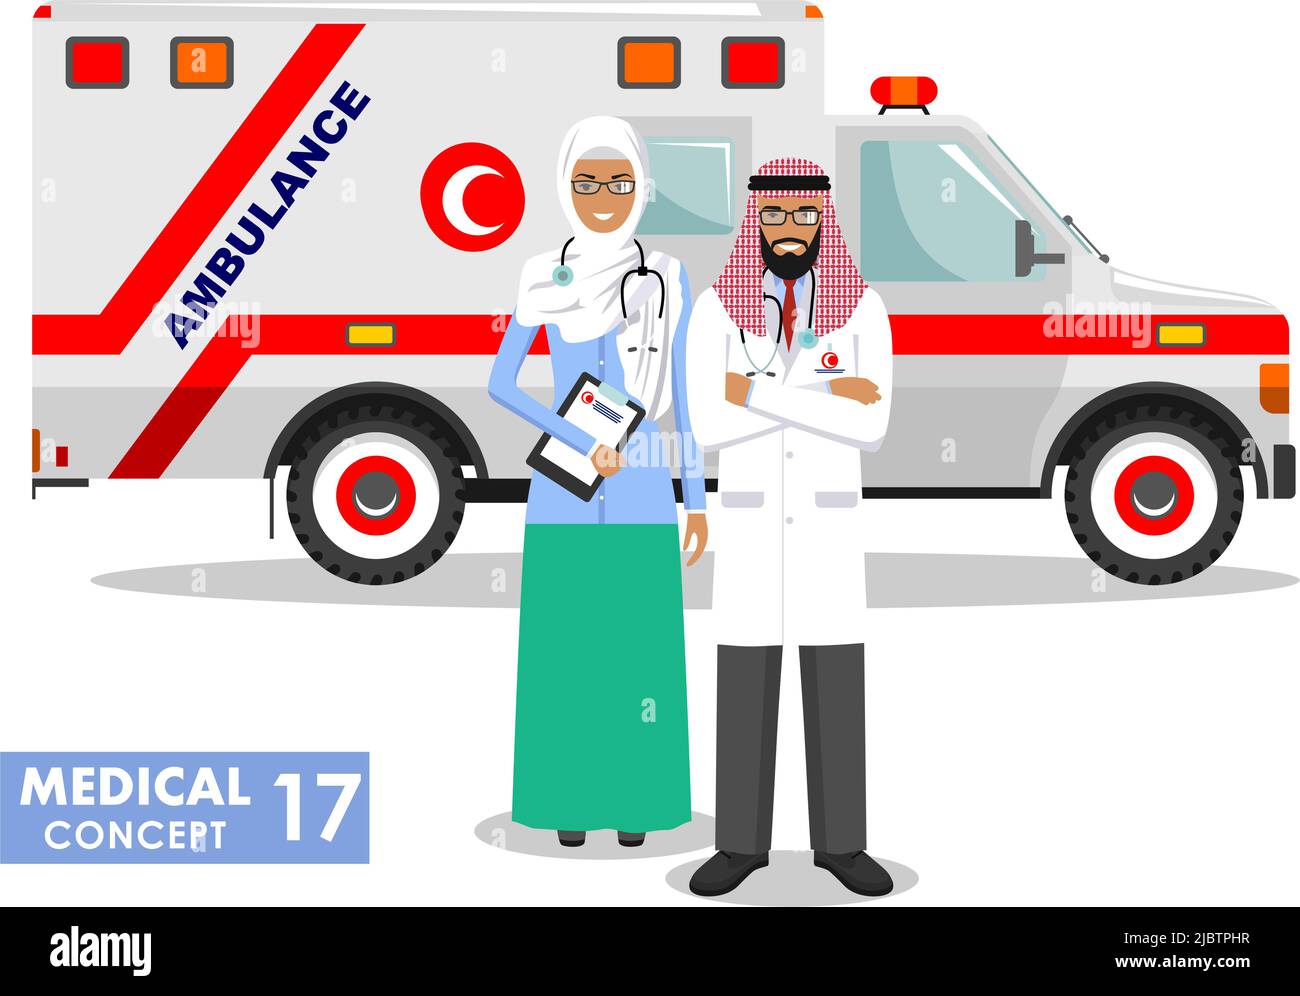 Detaillierte Illustration muslimischer Krankenwagen und arabischer Sanitäter, Notarzt, Krankenschwester in flachem Stil auf weißem Hintergrund. Vektorgrafiken Stock Vektor